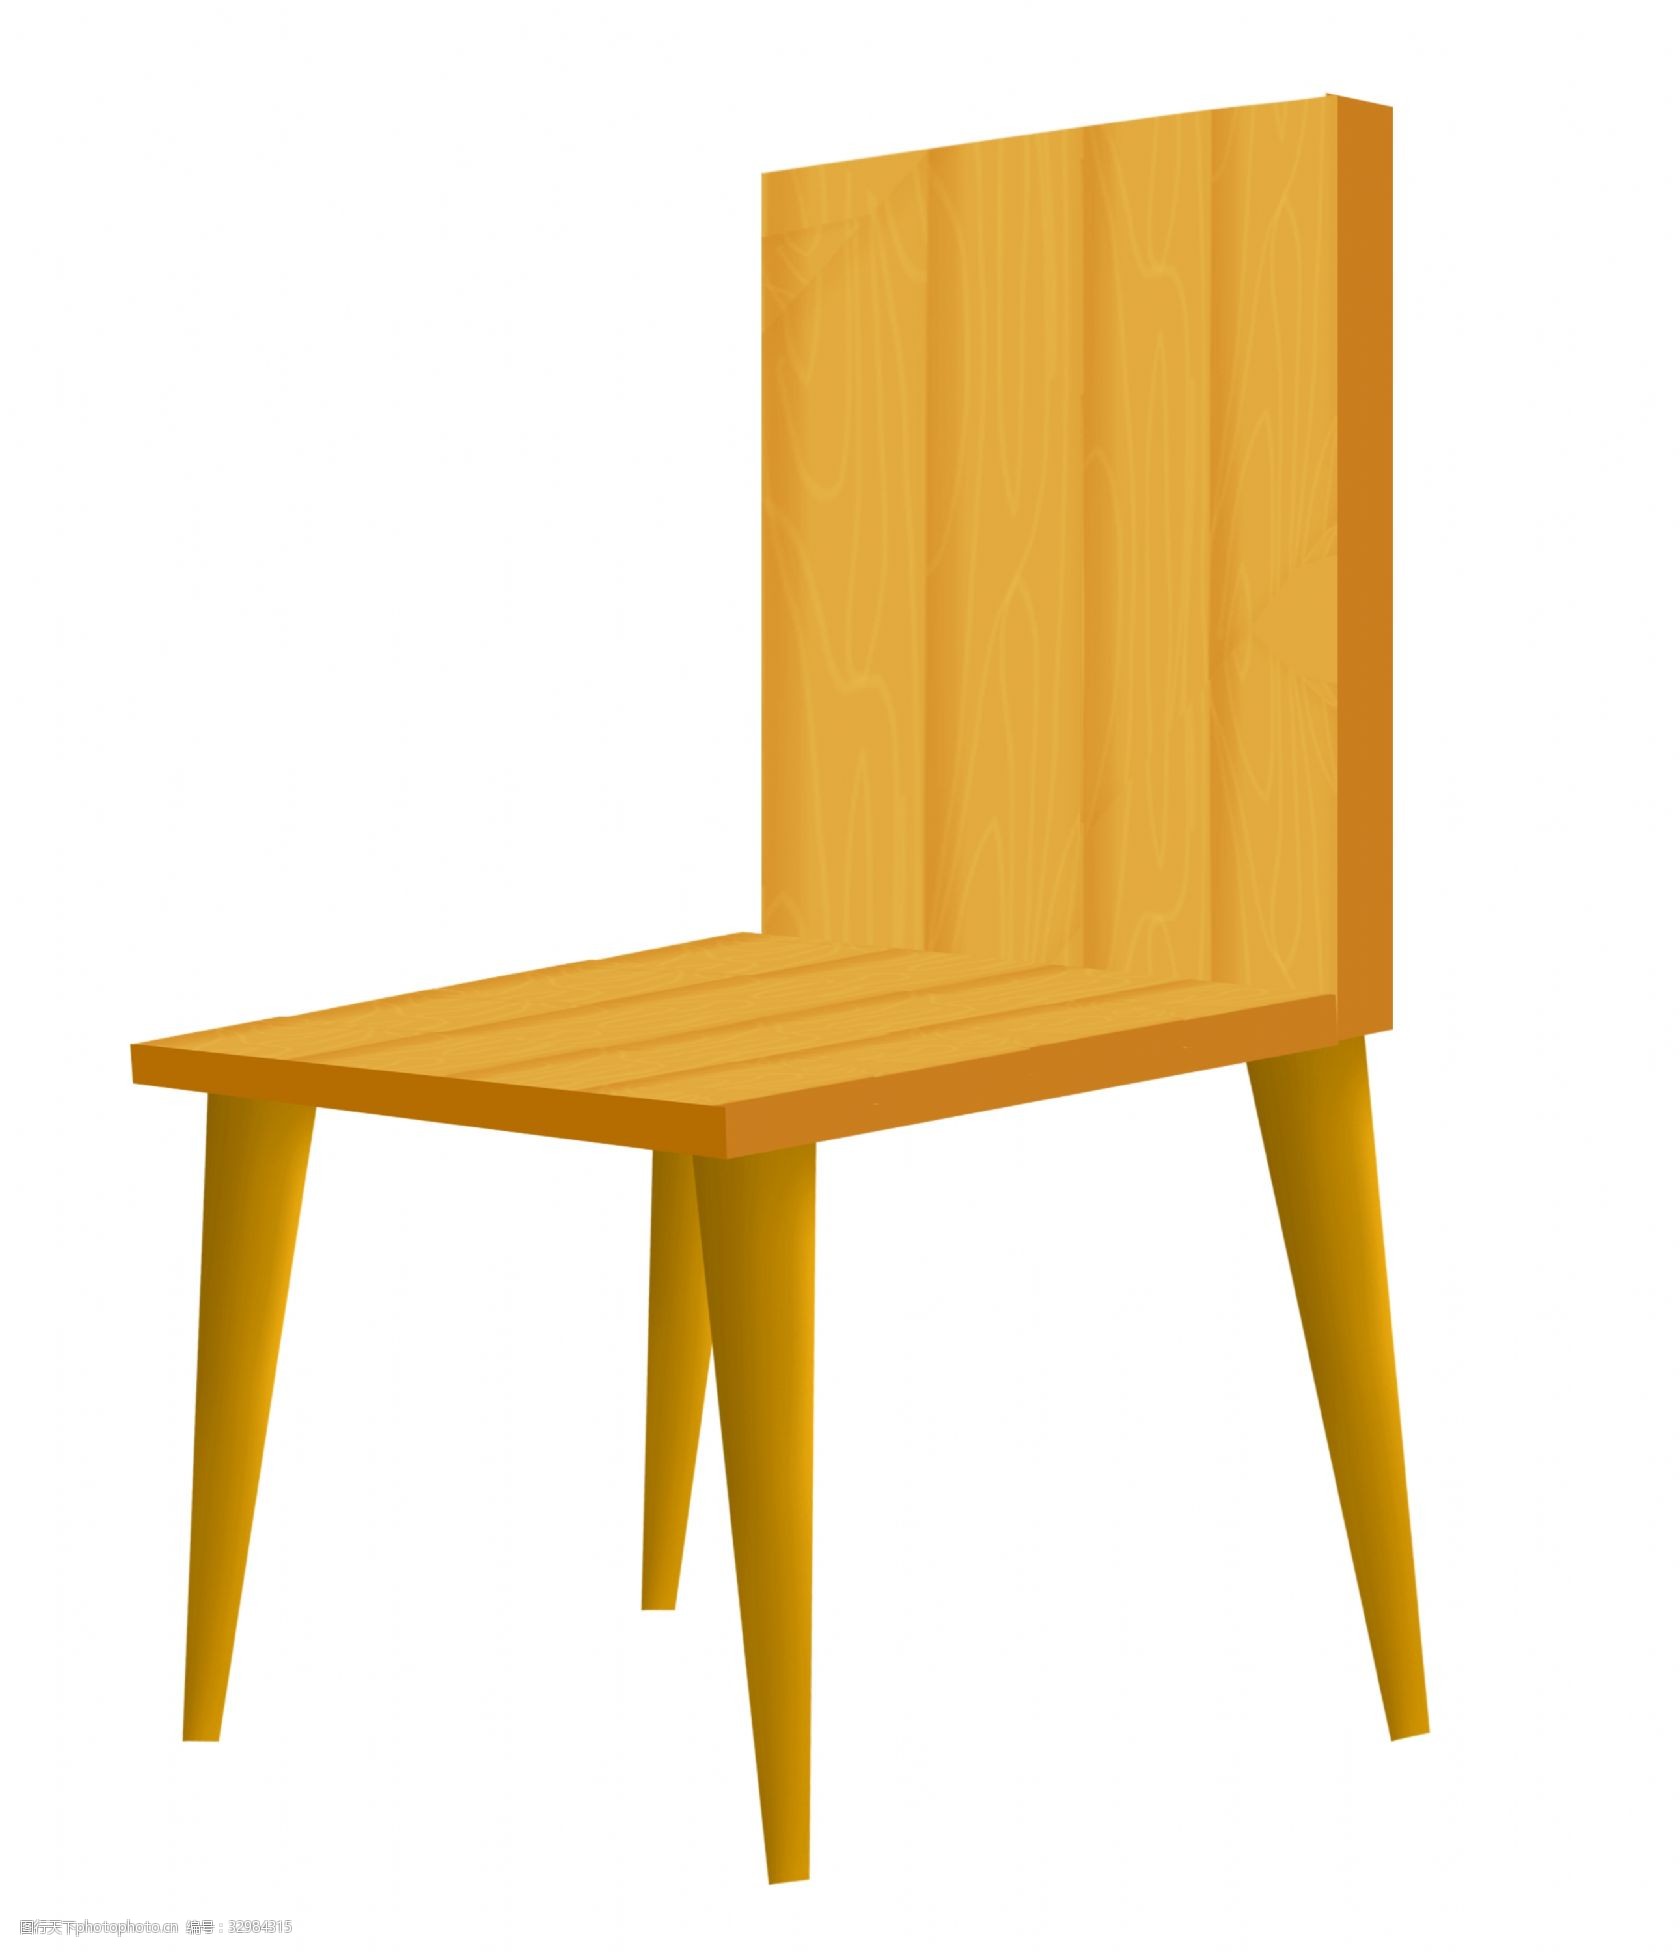 关键词:棕色的木质椅子插画 棕色的椅子 卡通插画 椅子插画 家具插画